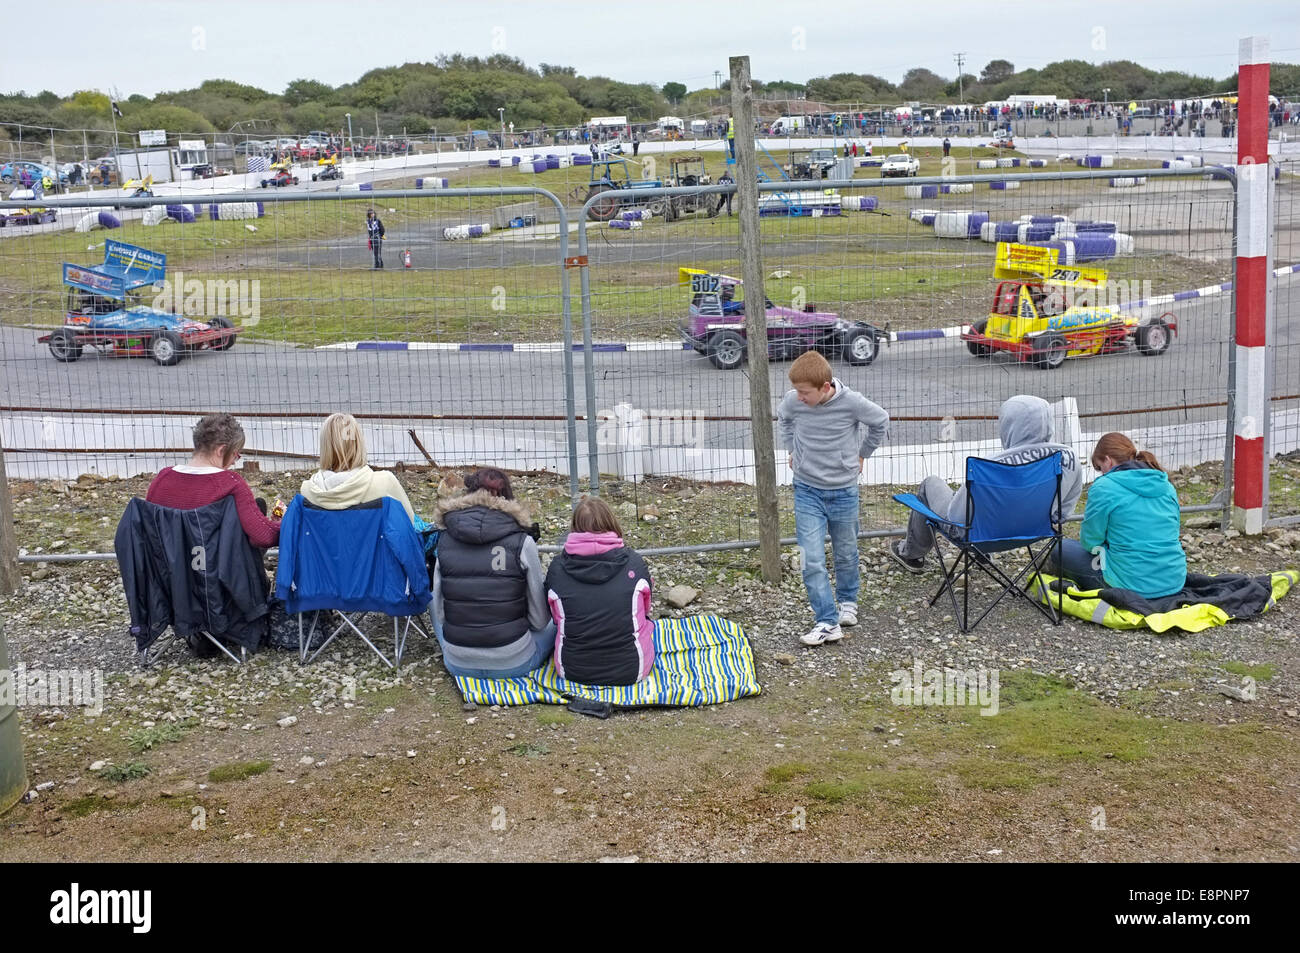 Le stock car et banger racing à United Downs Raceway, er jour, Cornwall Banque D'Images